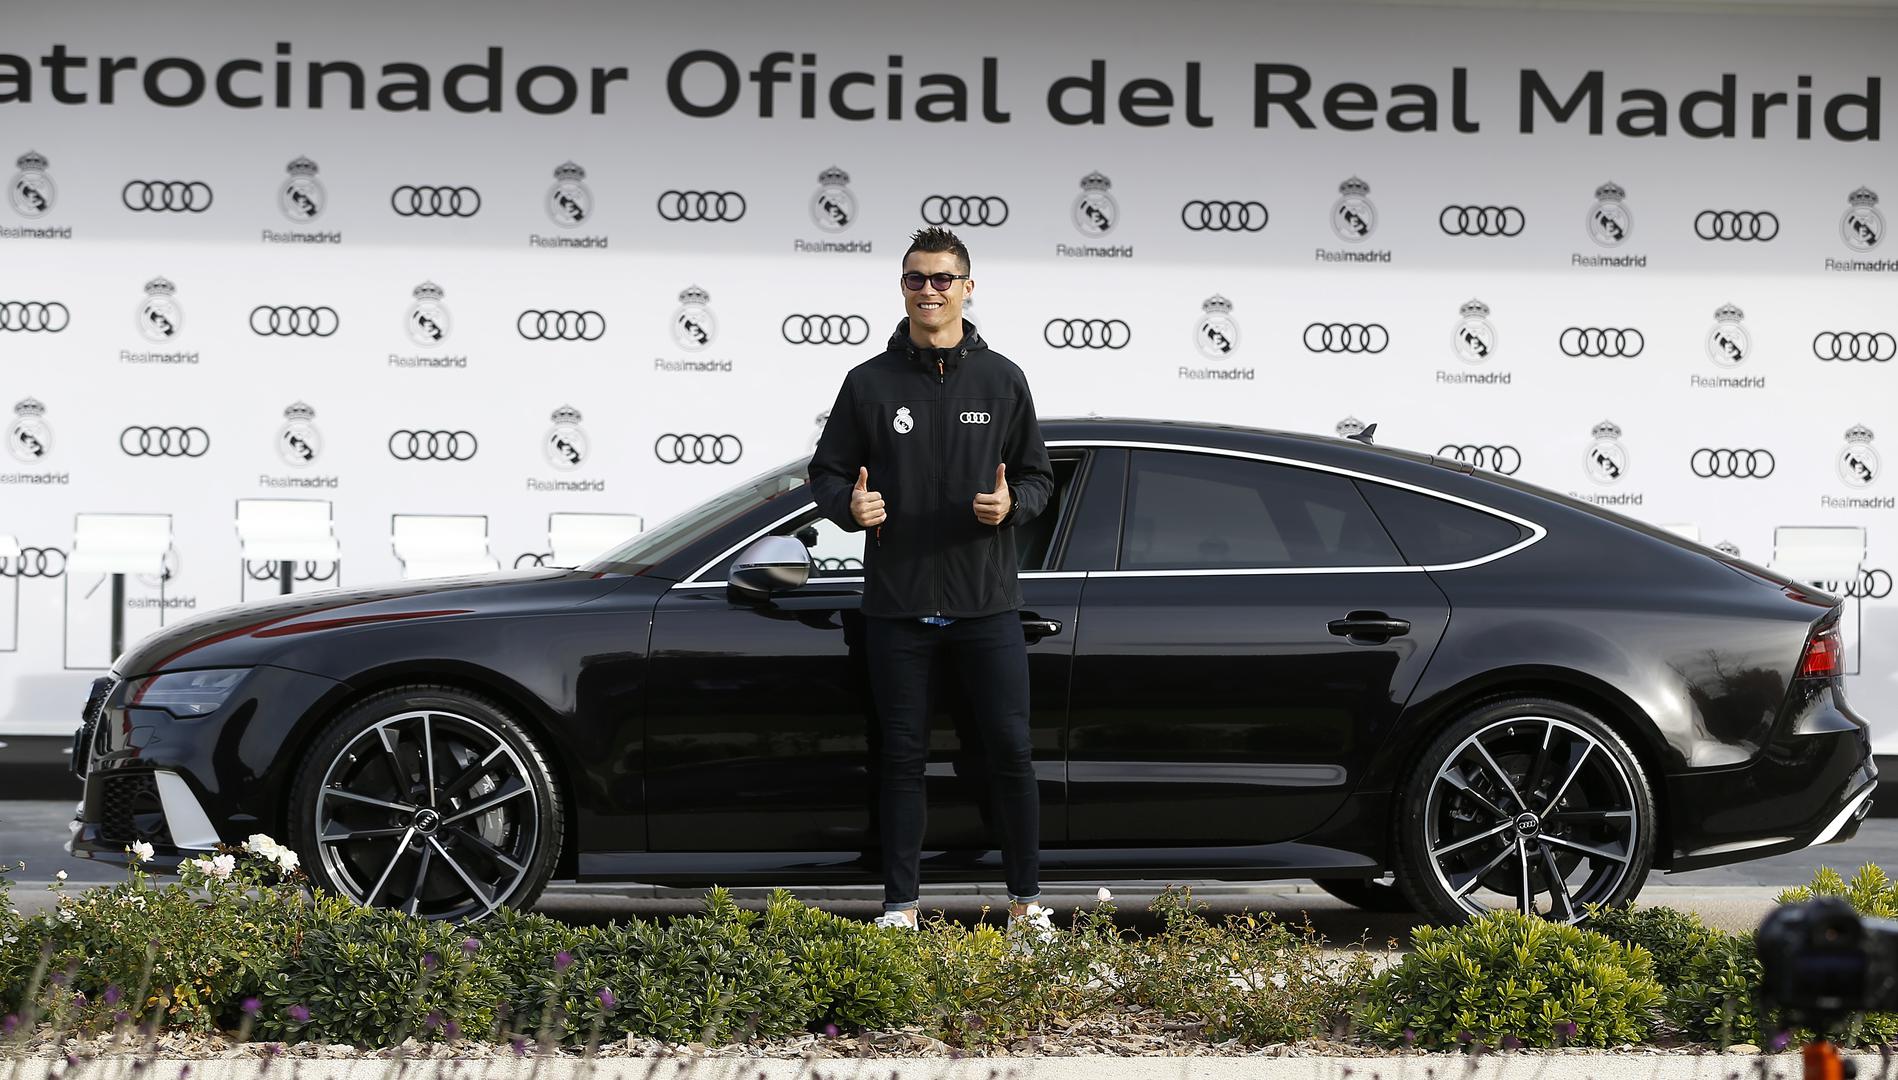 Nogometaši Reala nedavno su dobili nove automobile. Cristiano Ronaldo odvezao se s Audijem RS7 Performance od dva milijuna kuna. Vjerojatno je to najjeftiniji automobil koji će voziti zbog sponzora. Pa, zato vrijedi početi i završiti sa zvijezdom kraljevskog kluba, jer najskuplji automobil u njegovoj garaži košta... Ma, boli glava!